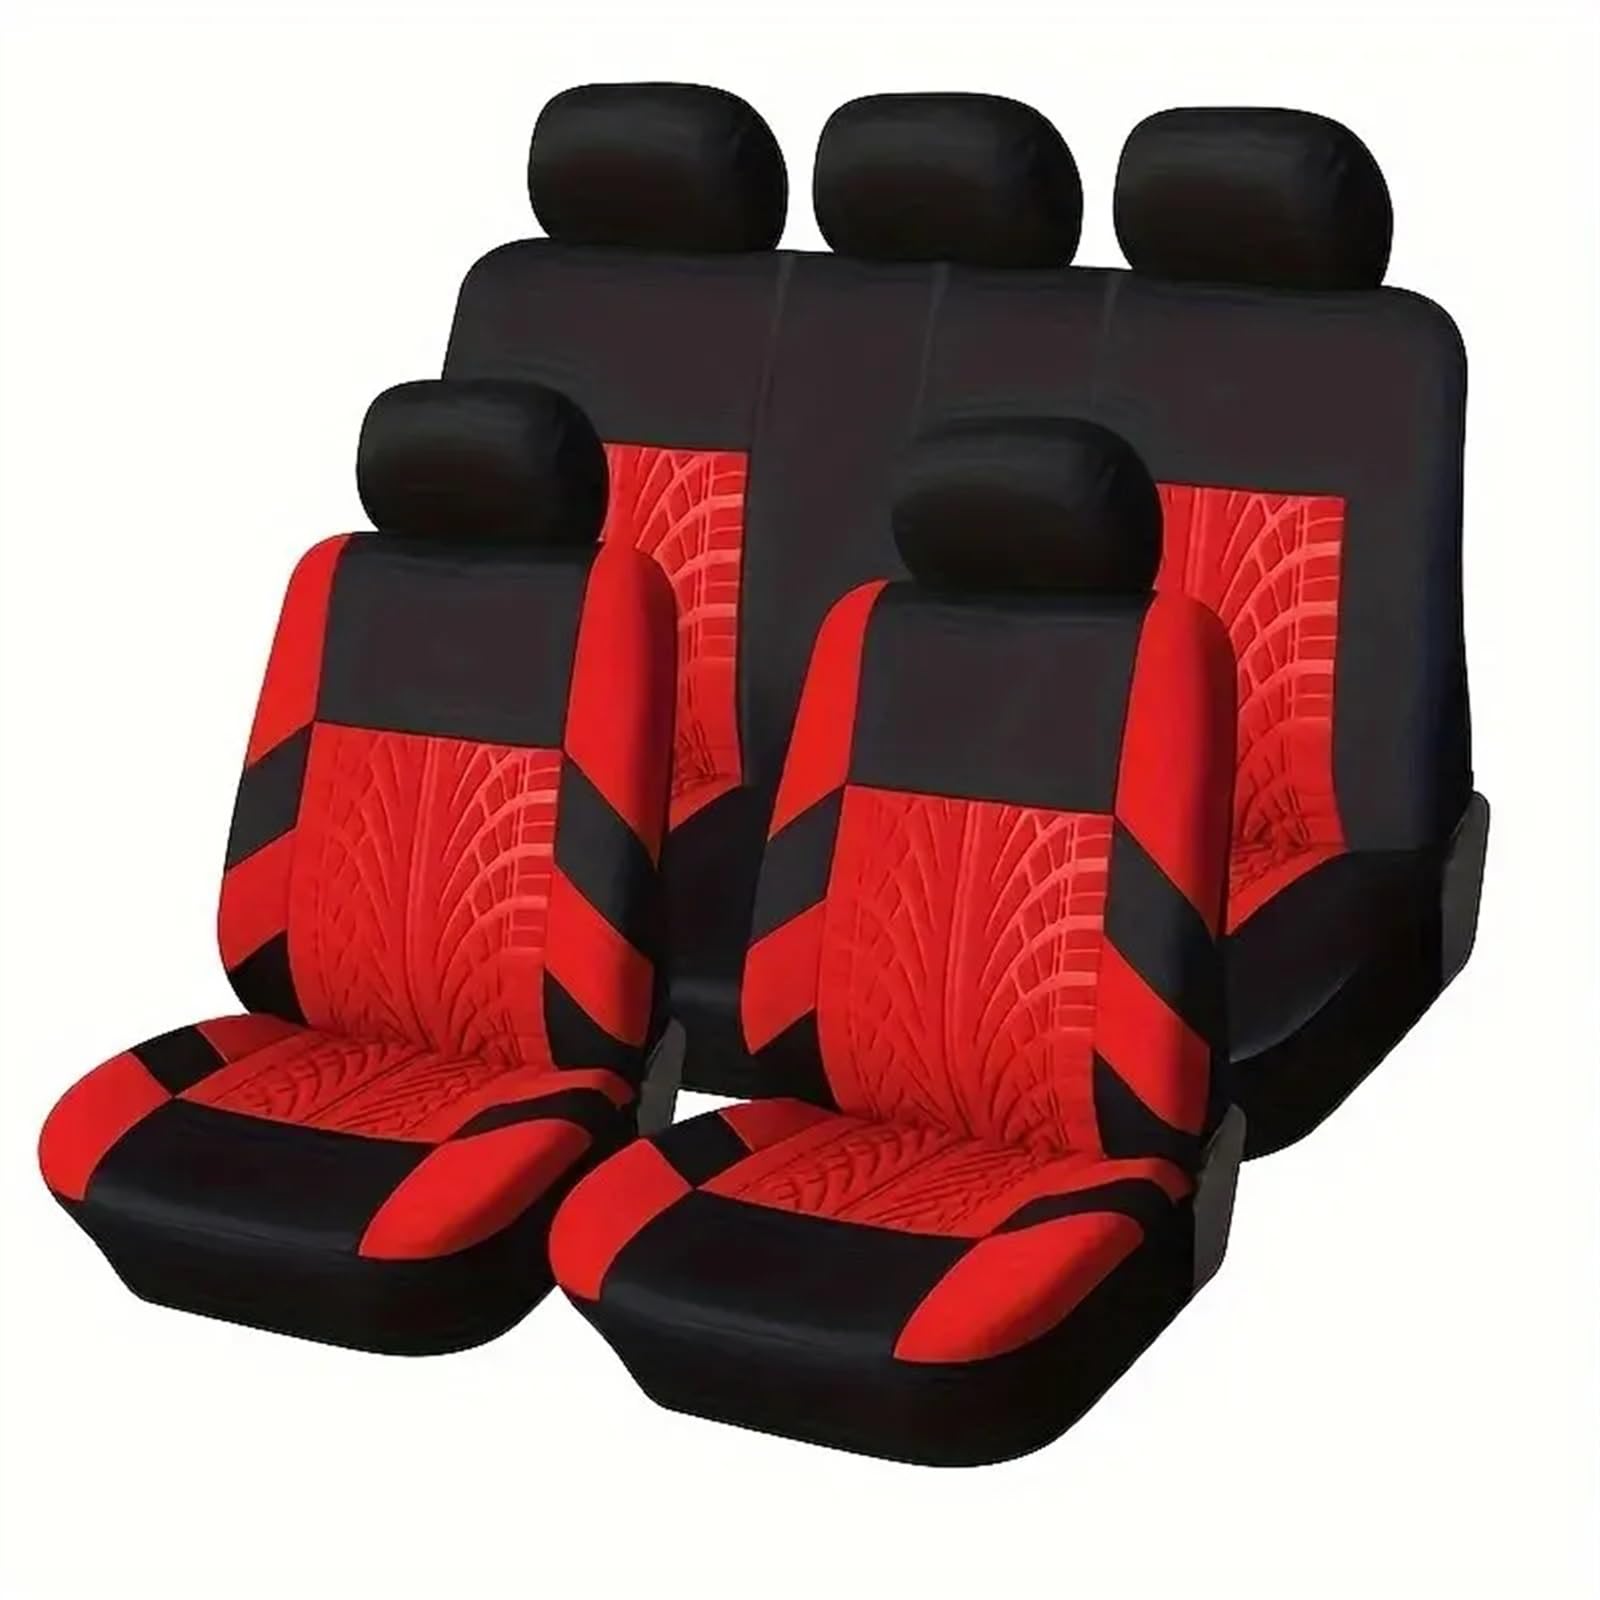 AYKANING AutositzbezüGe,Autositzschoner 9-teiliges Universal-Autositzbezug-Set - Atmungsaktives, stilvolles und langlebiges Polyester-Design for alle Automodelle - Verbessert den Komfort A(Red) von AYKANING